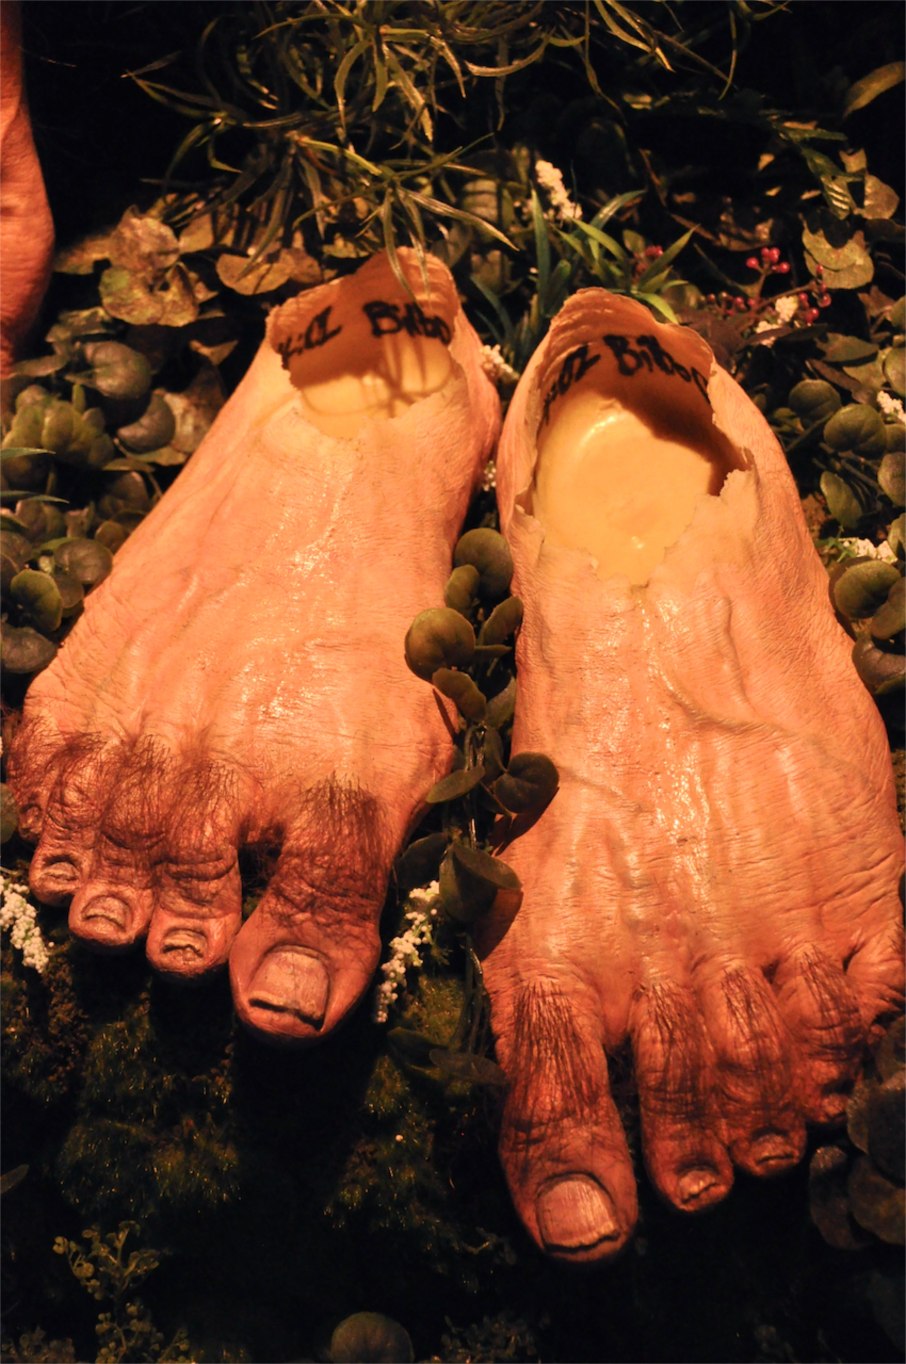 Hobbit feet